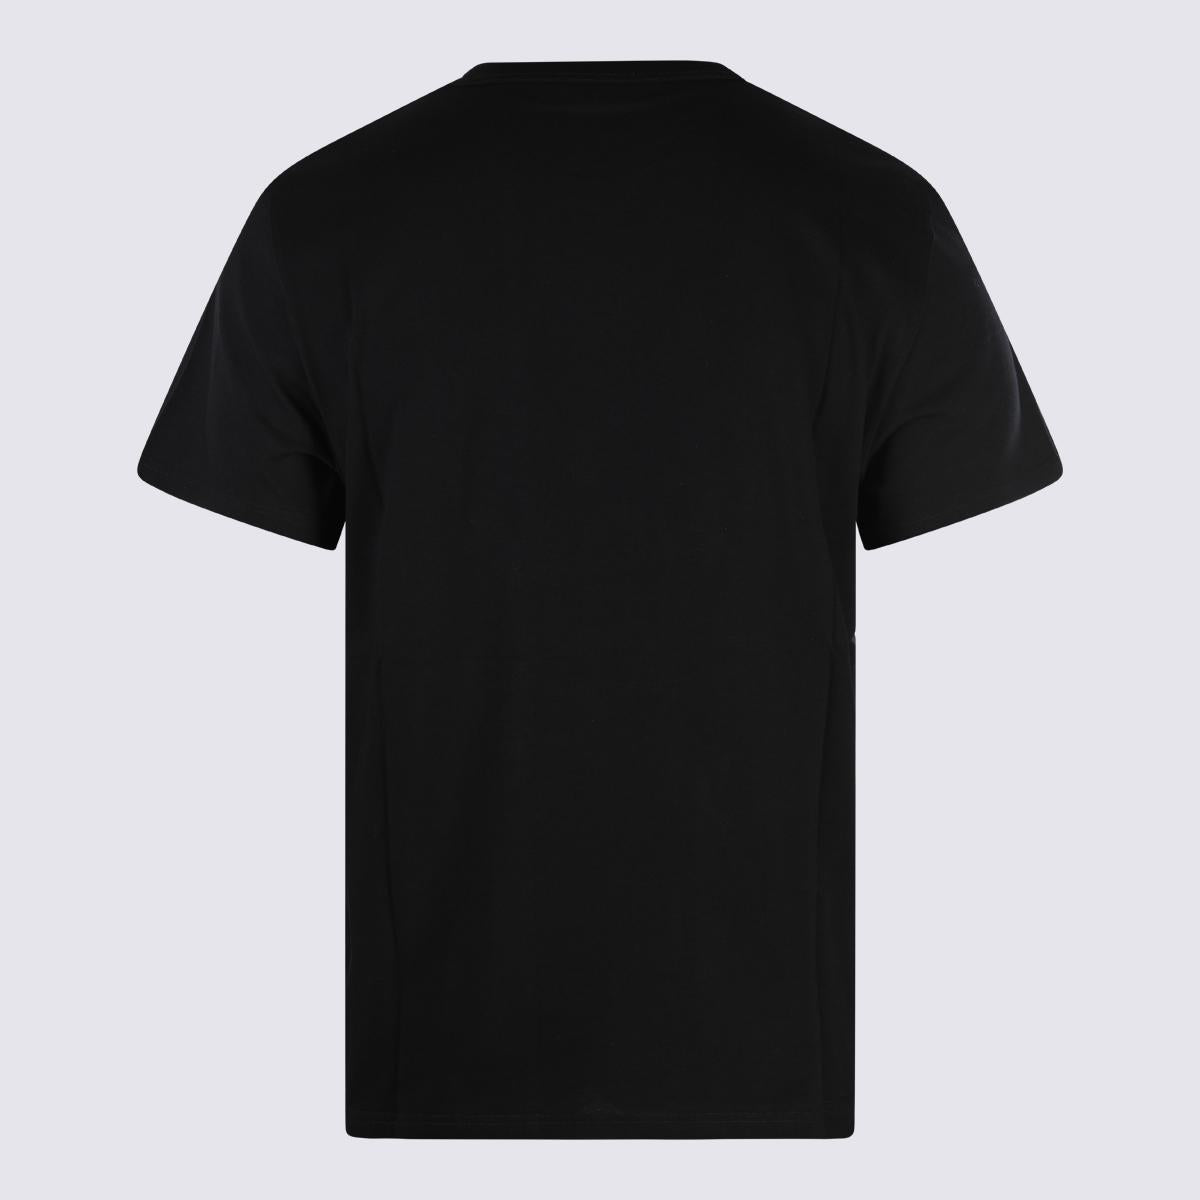 Shop Alexander Mcqueen Black Cotton T-shirt